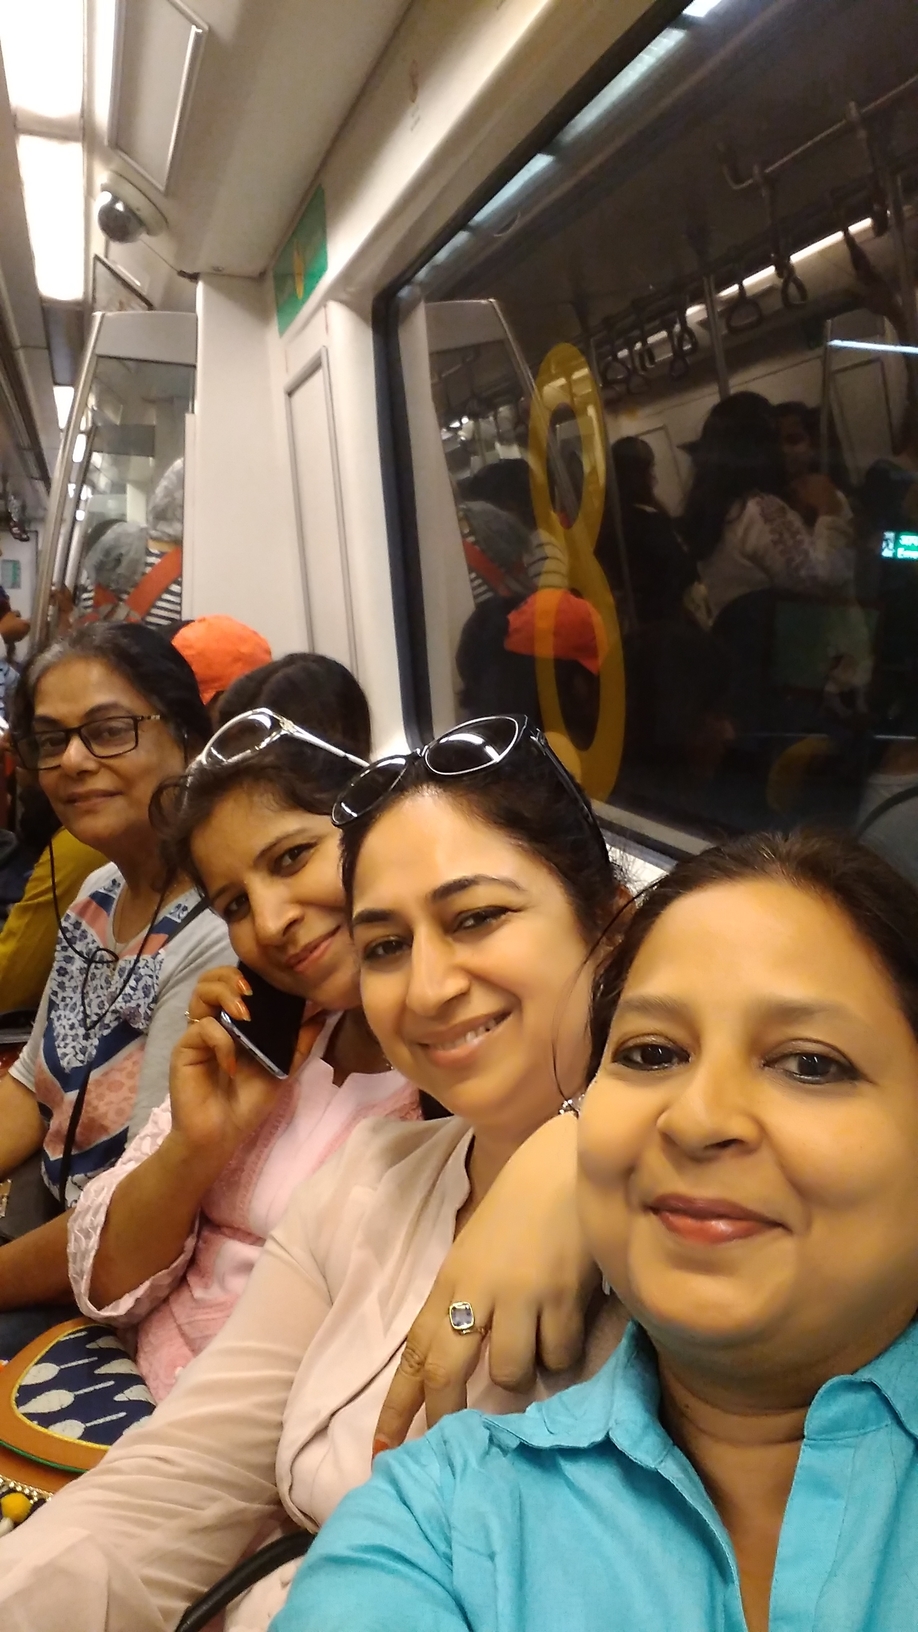 Metro @ Chandni Chowk